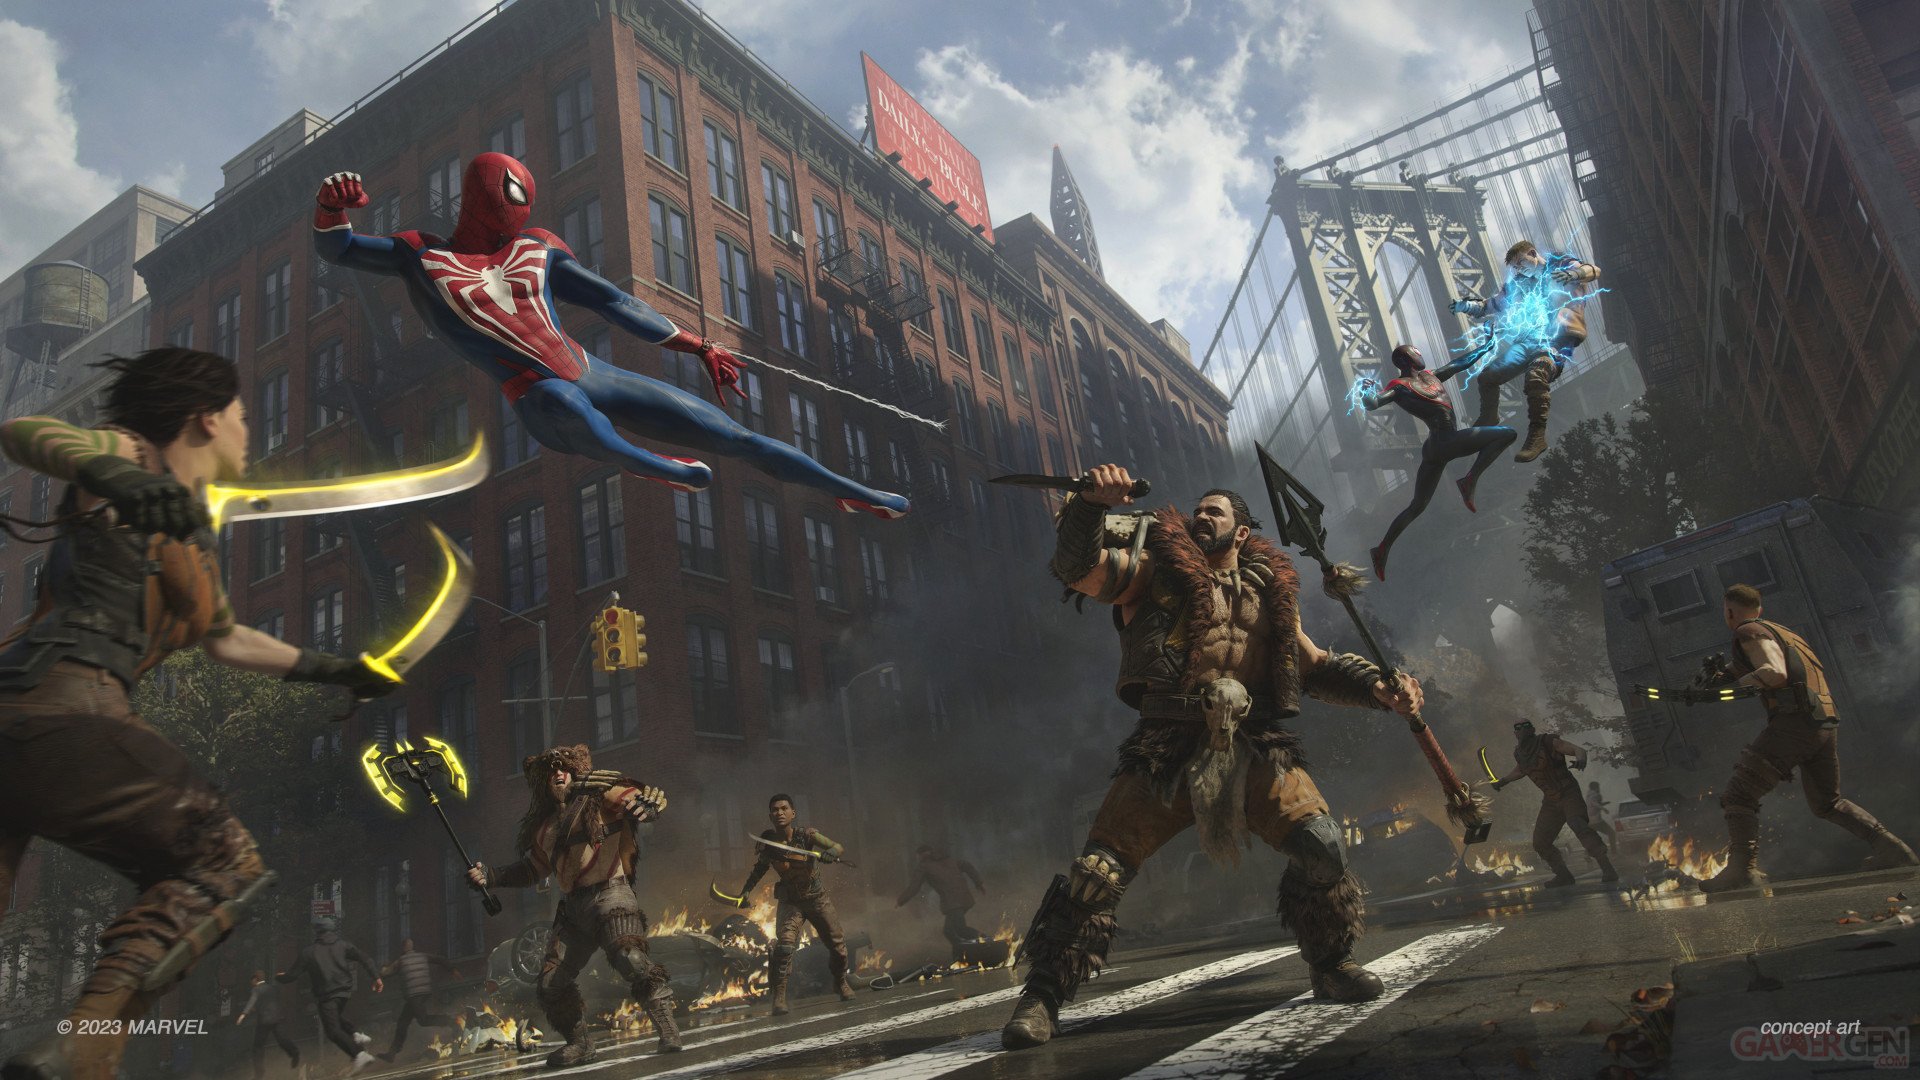 Marvel's Spider-Man 2 - Édition Deluxe numérique